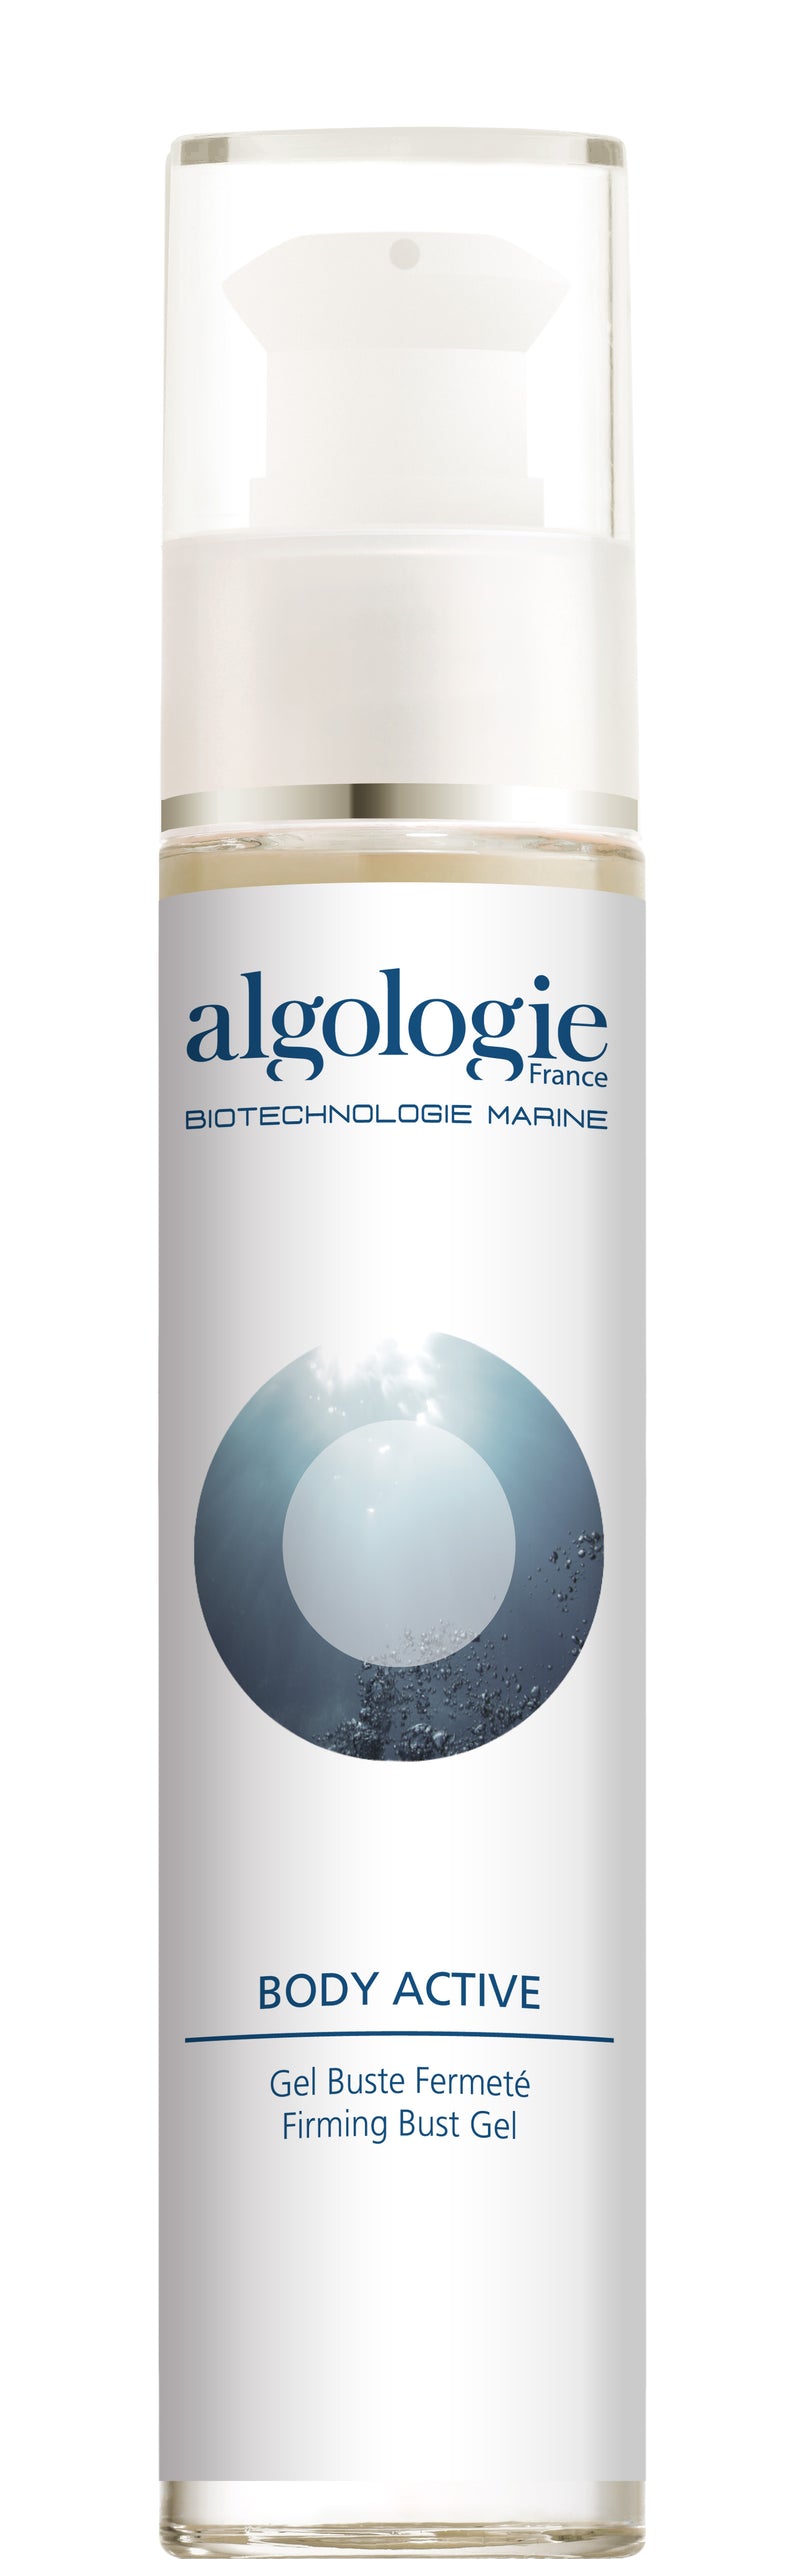 Algologie Firming Bust Gel 50ml